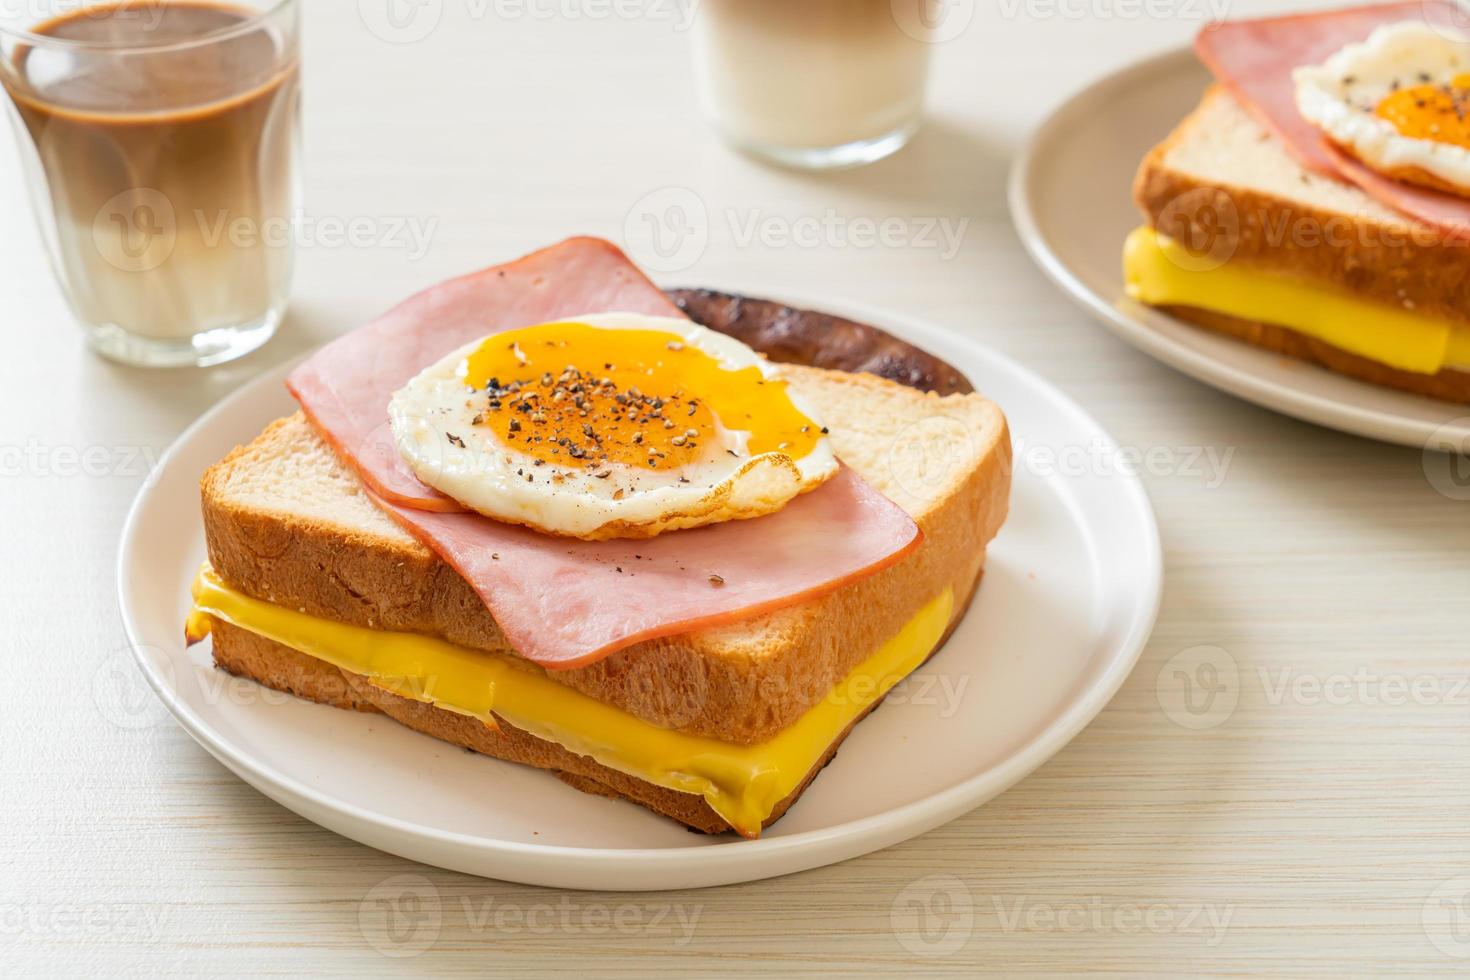 pane fatto in casa formaggio tostato, prosciutto cotto e uovo fritto con salsiccia di maiale a colazione foto